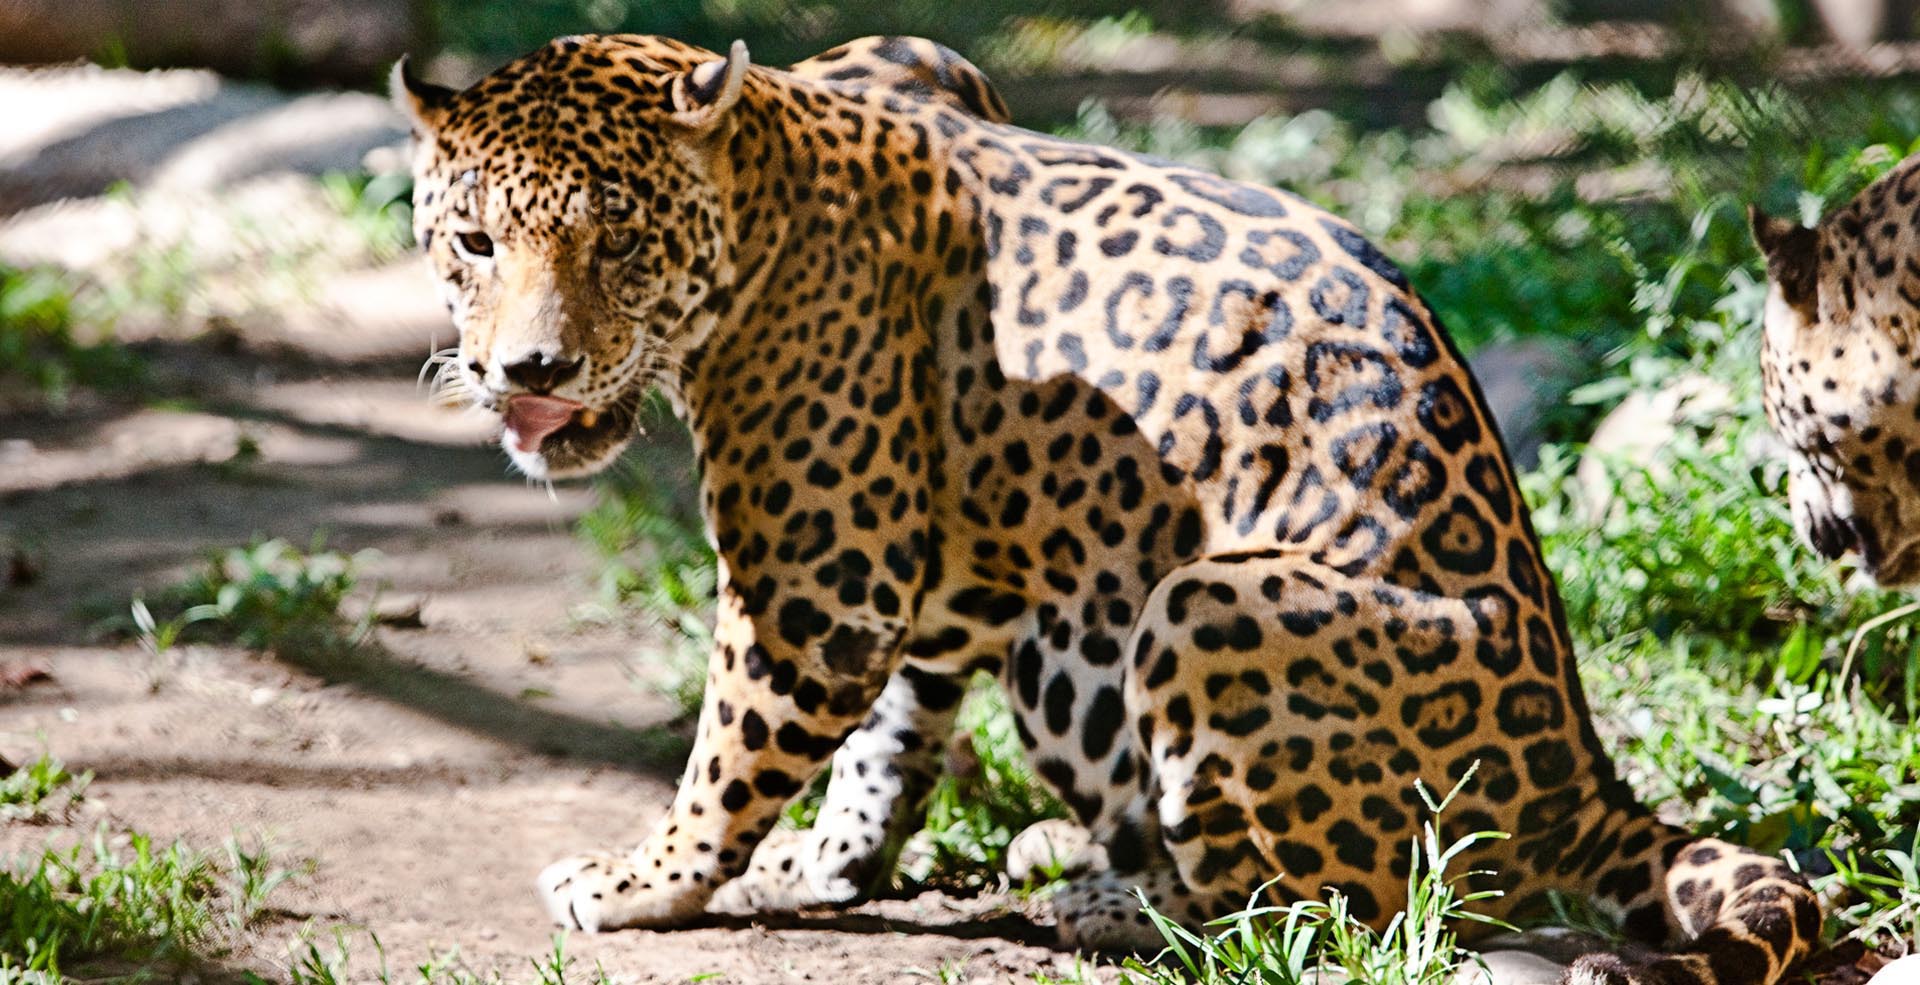 メキシコ大使館 ジャガーは体長が1 7 2 3メートルあり アメリカ大陸最大級のネコ科の野生動物です ネコ科 のなかでも世界で3番目に大きいとされています ジャガーが生息しているのは メキシコ南部の密林地帯で そこではカイマンと並び最大級の捕食